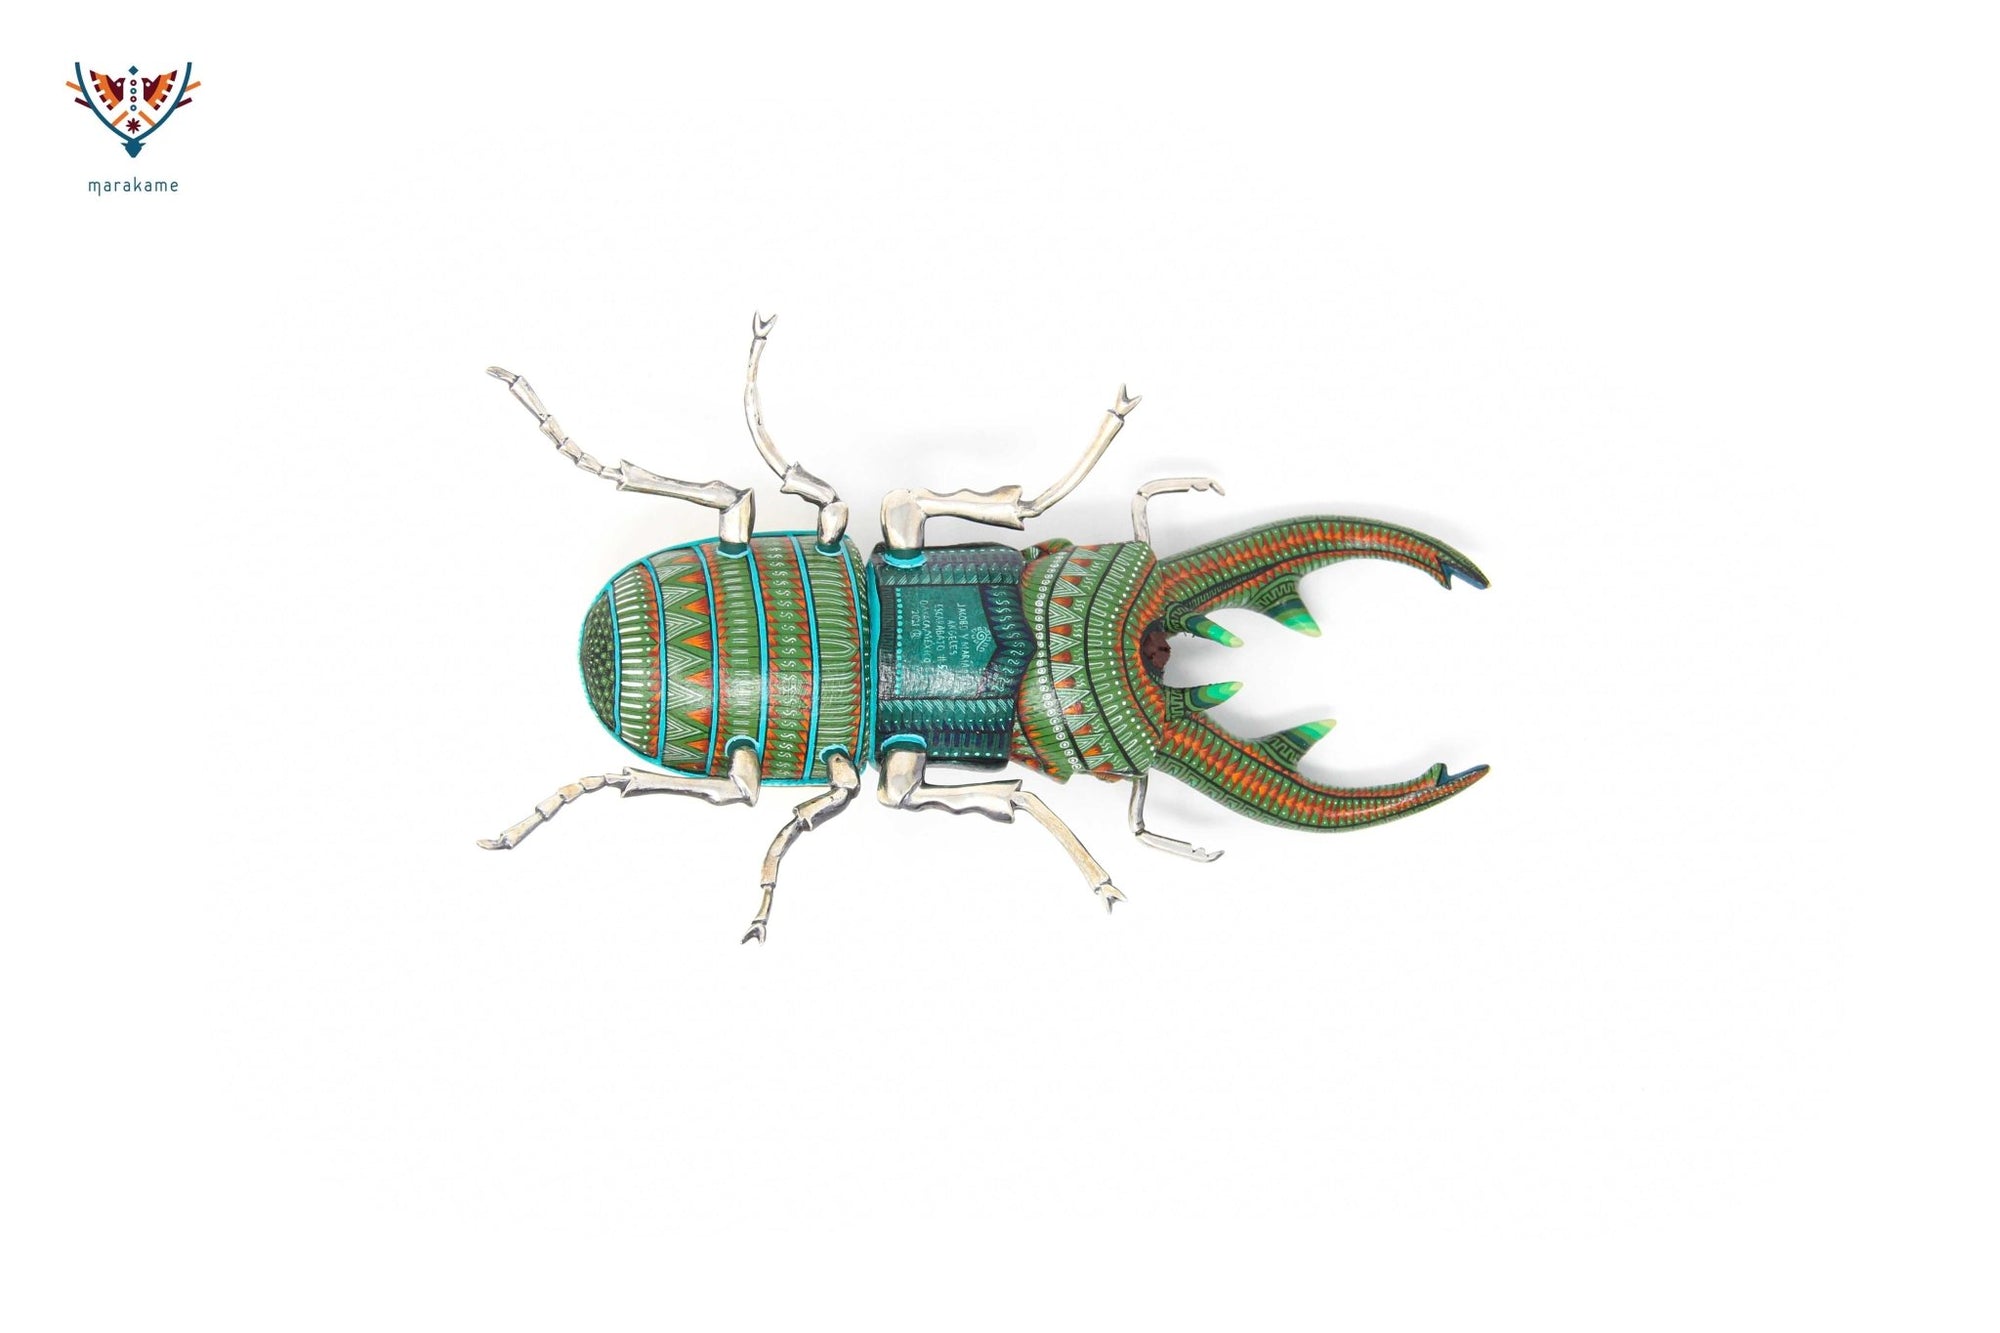 Female beetle - Witol yee XIII - Huichol Art - Marakame